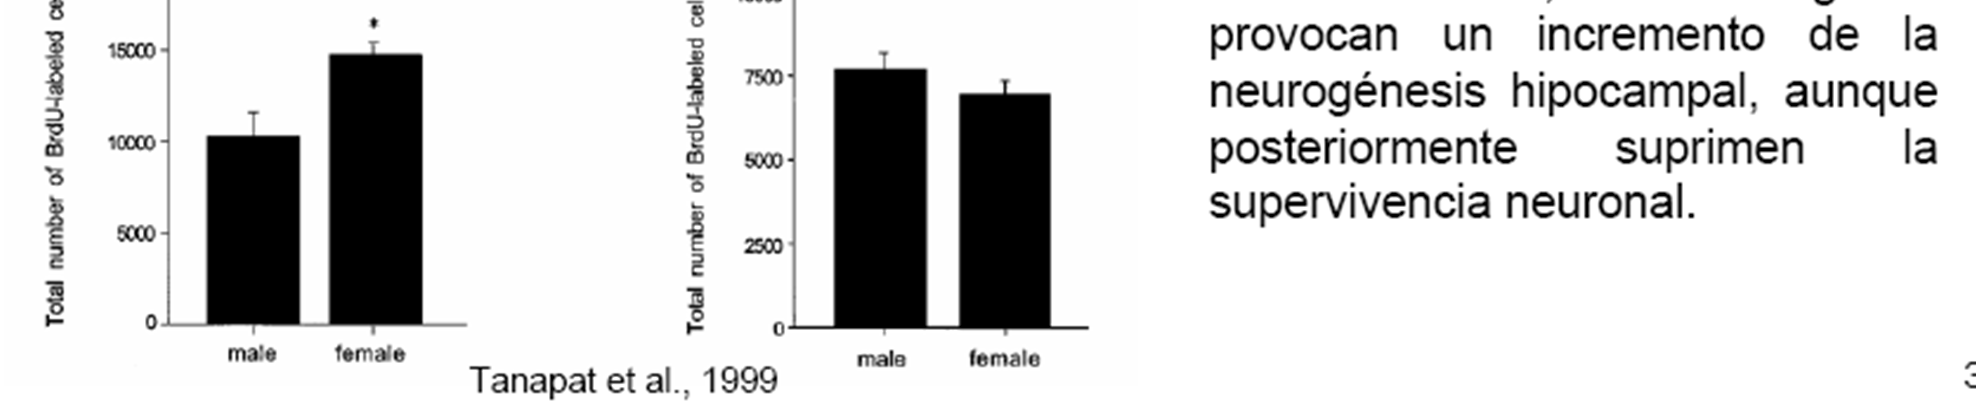 Hormonas sexuales, aprendizaje y plasticidad Los estrógenos producen un incremento de espinas dendríticas en CA1 hipocampal (McEwn et al., 1993).